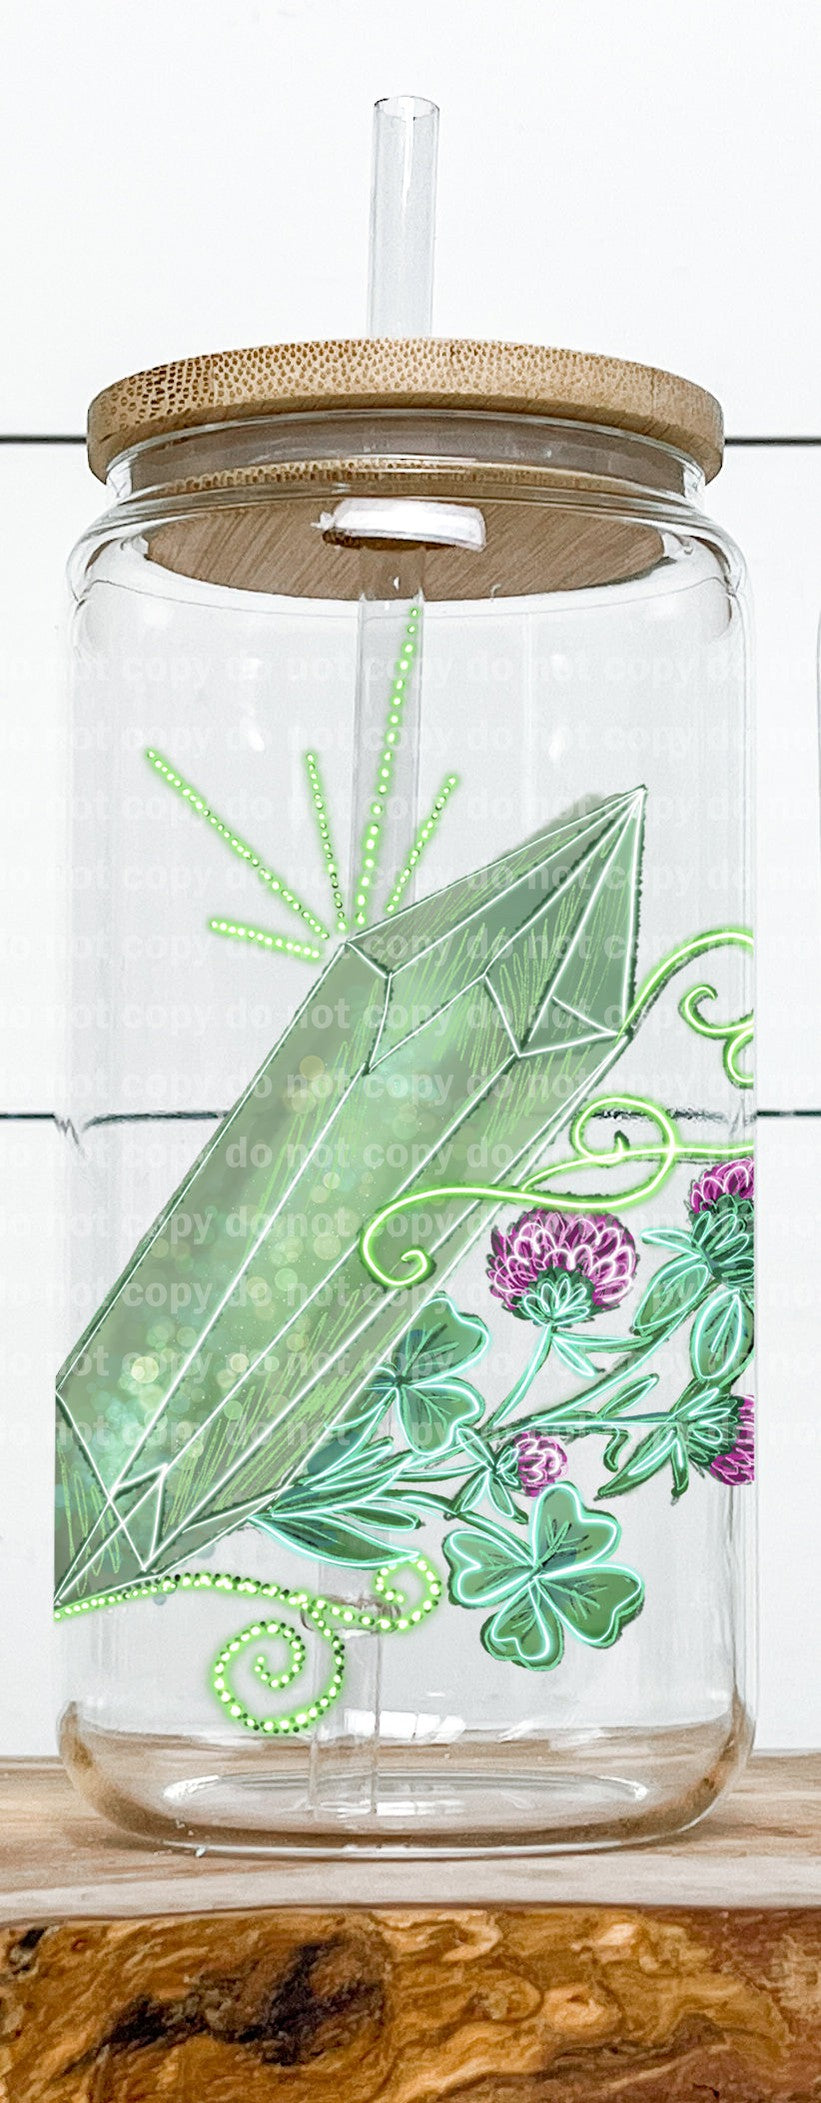 Calcomanía verde floral de cristal 3,2 x 4,5